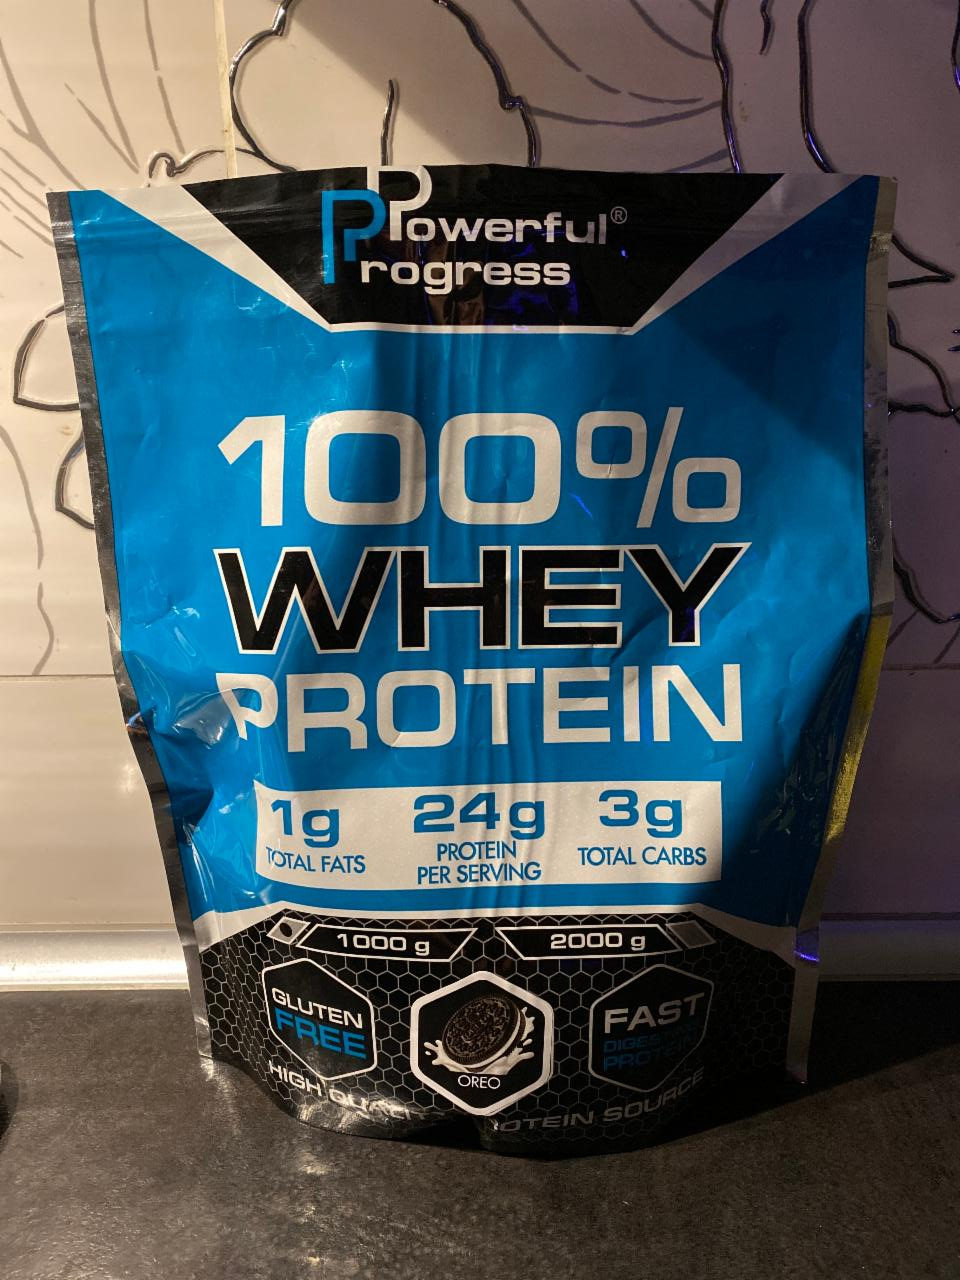 Фото - Протеїн зі смаком печива Oreo 100% Whey Protein Powerful Progress